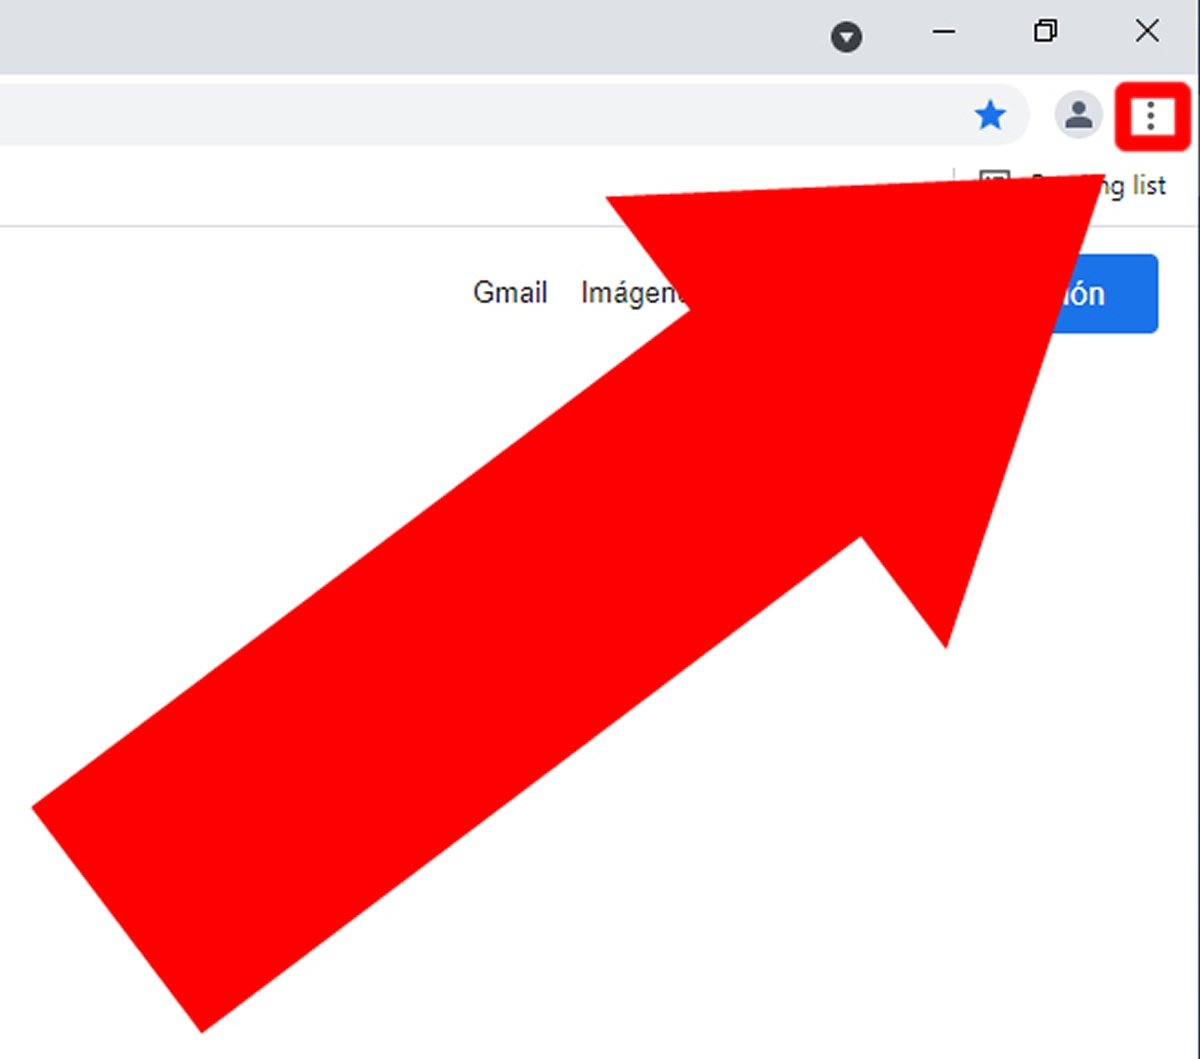 Ouvrez Google Chrome.
Cliquez sur les trois points verticaux en haut à droite de la fenêtre, puis sélectionnez Plus d'outils et Extensions.